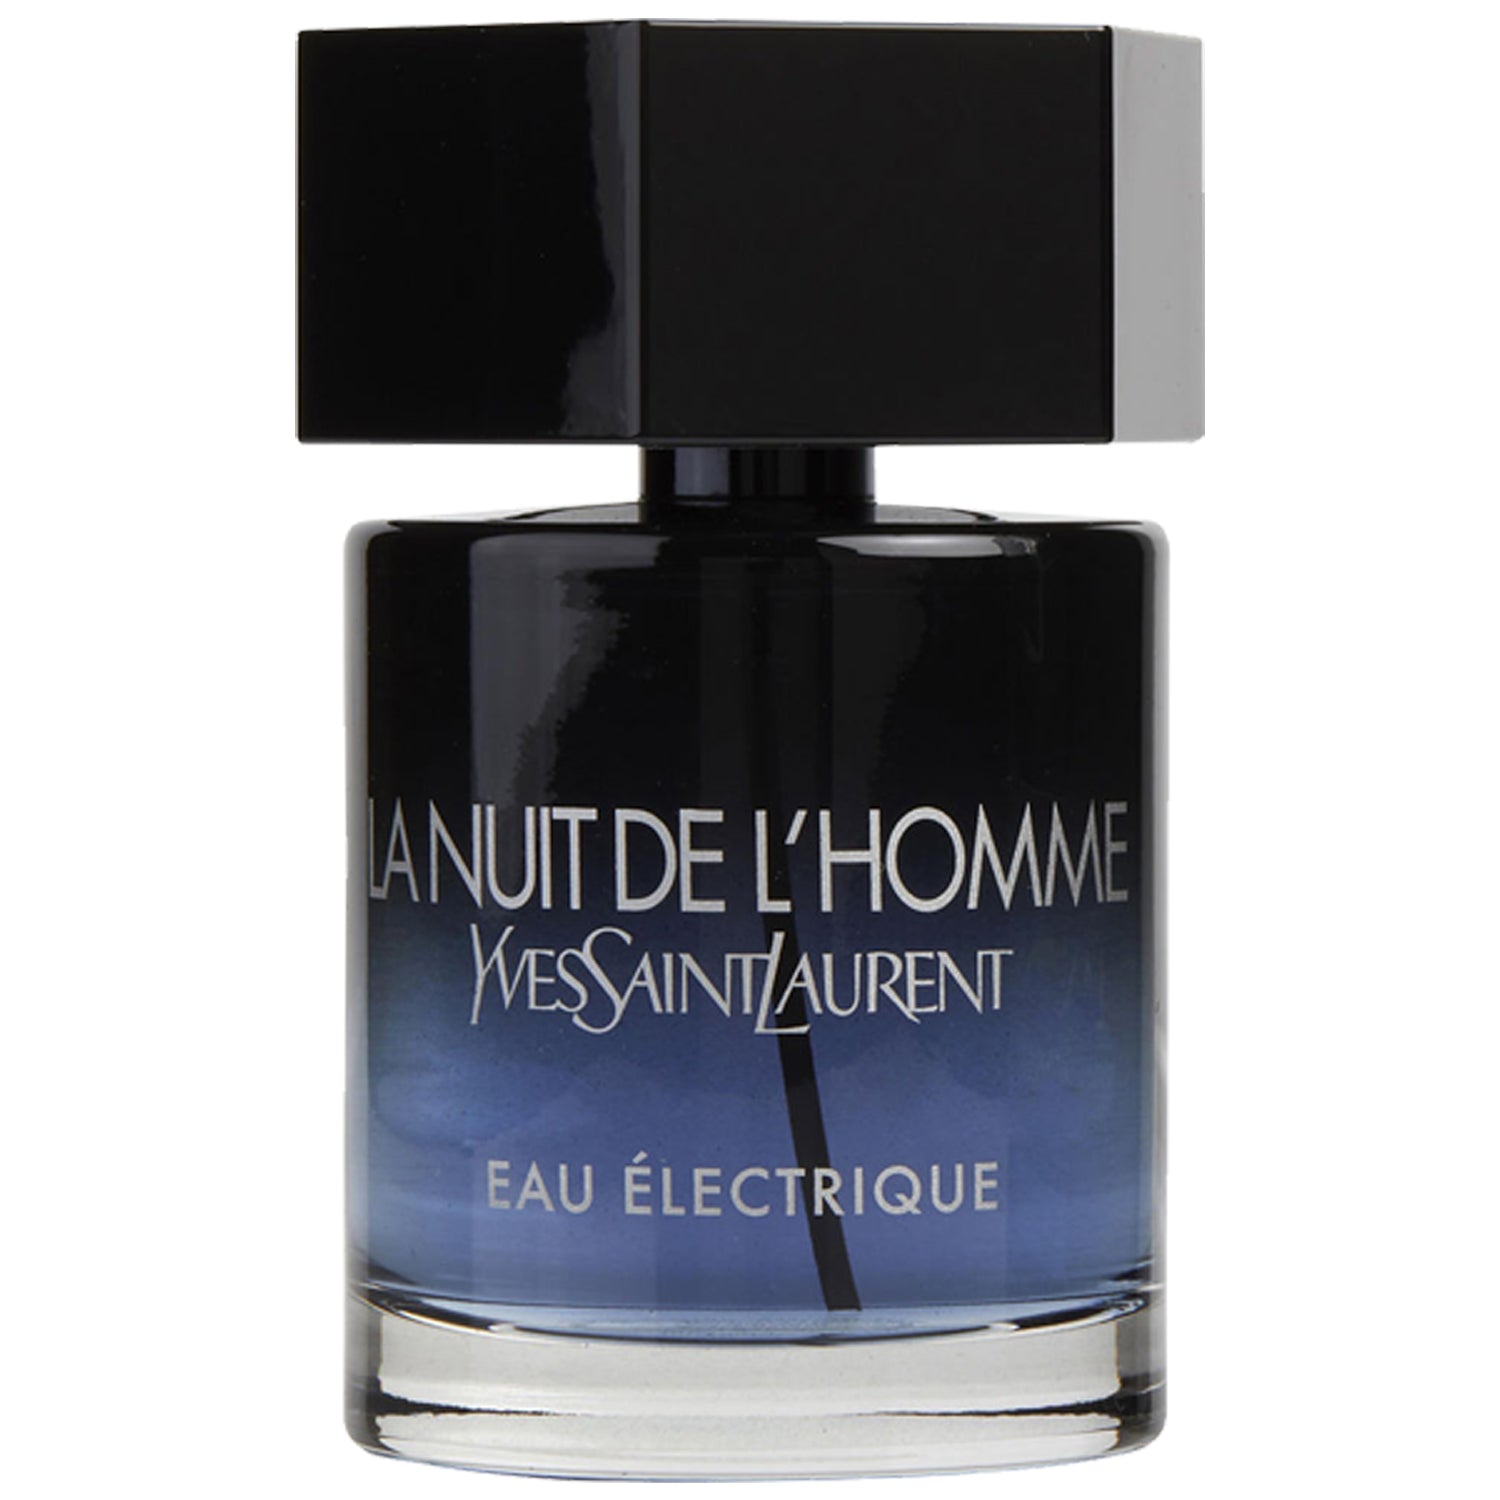 La Nuit De L'Homme Bleu Electrique Sample and Decants By Yves Saint Laurent  | Scentbee